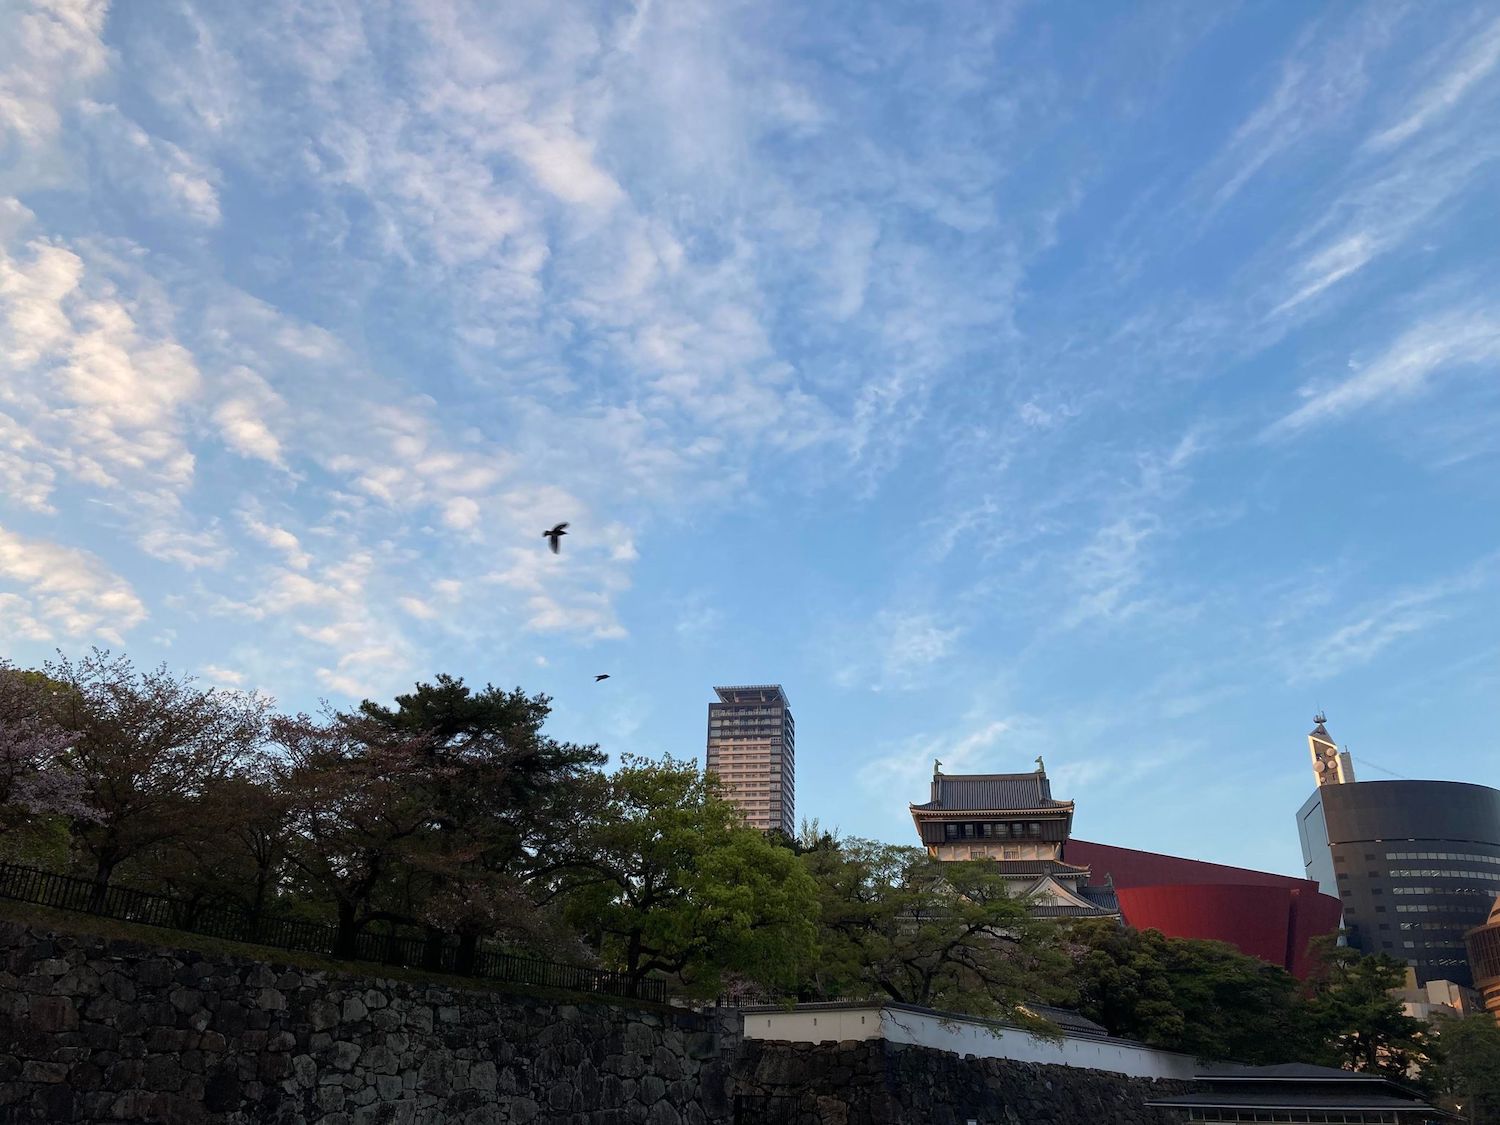 小倉駅から10分も歩けば小倉城が見えてくる。近隣にはショッピングモールもあり新旧共存の景色が楽しめる